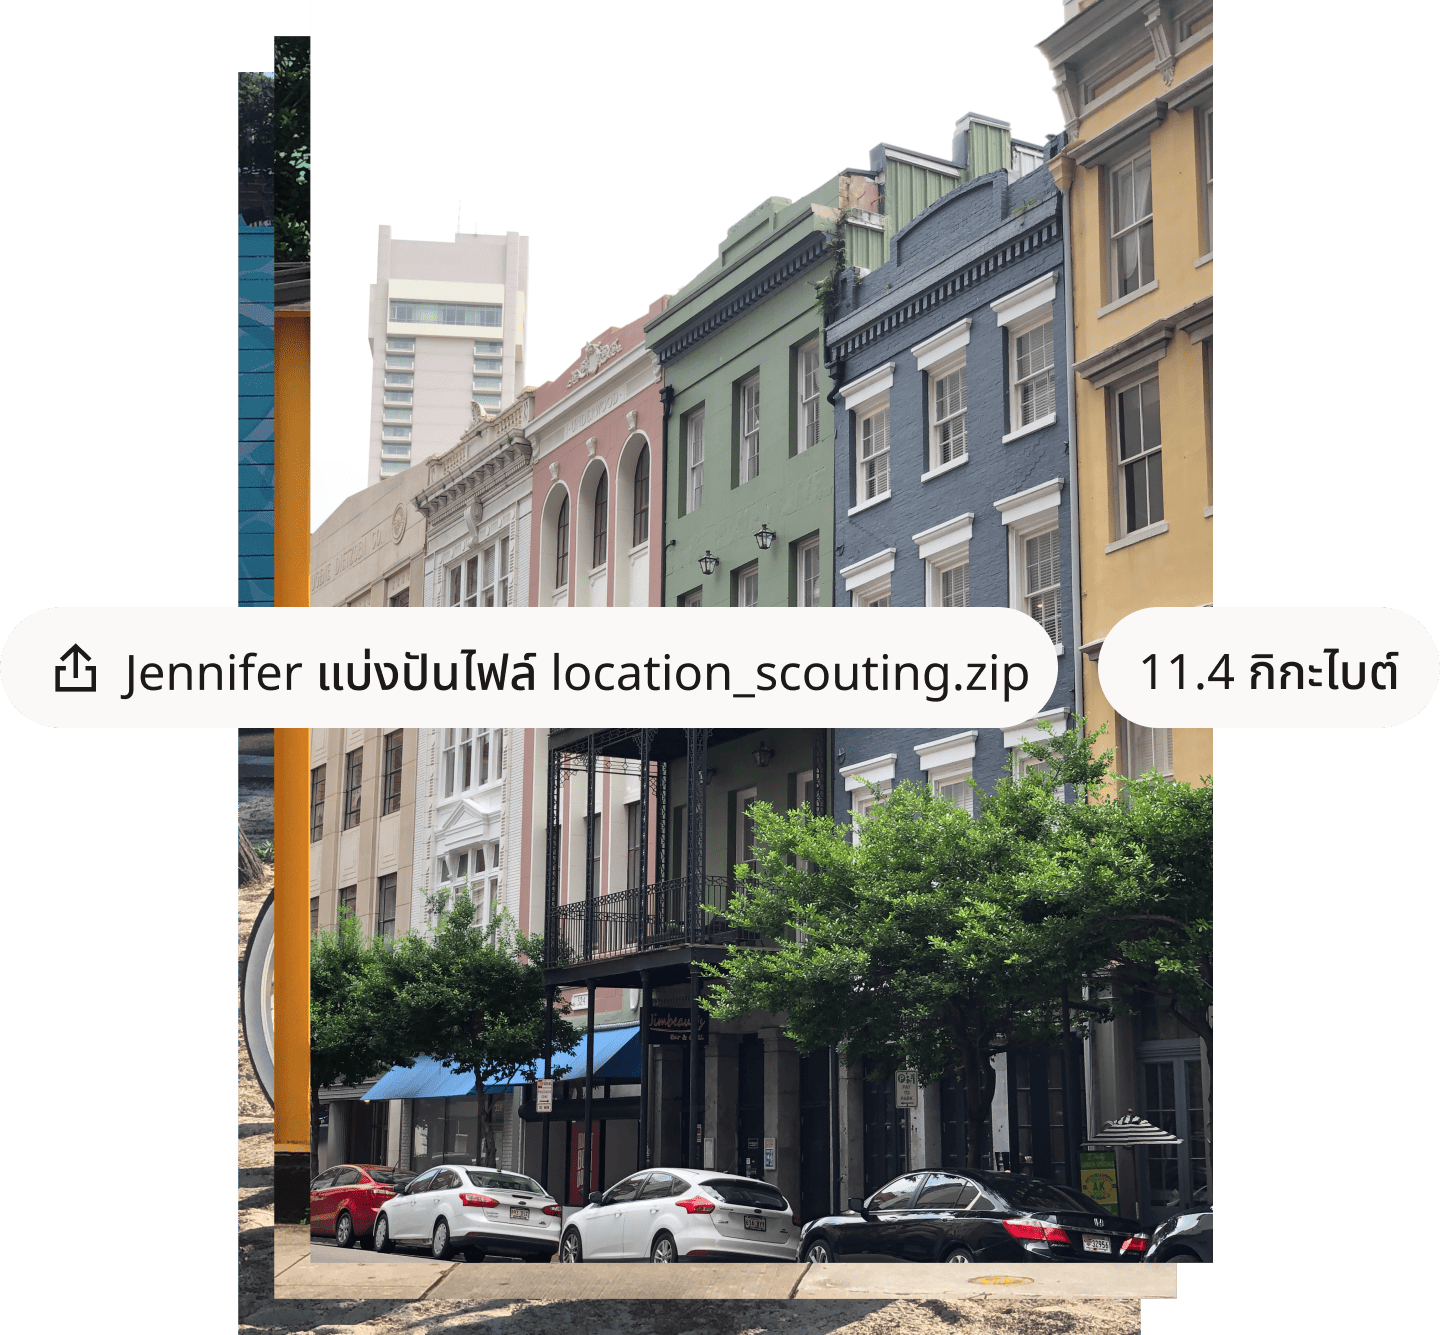 ภาพถ่ายถนนในเมืองที่มีอาคารสีสันสดใส พร้อมชื่อไฟล์และขนาดไฟล์ซ้อนทับในกรอบข้อความสีขาว